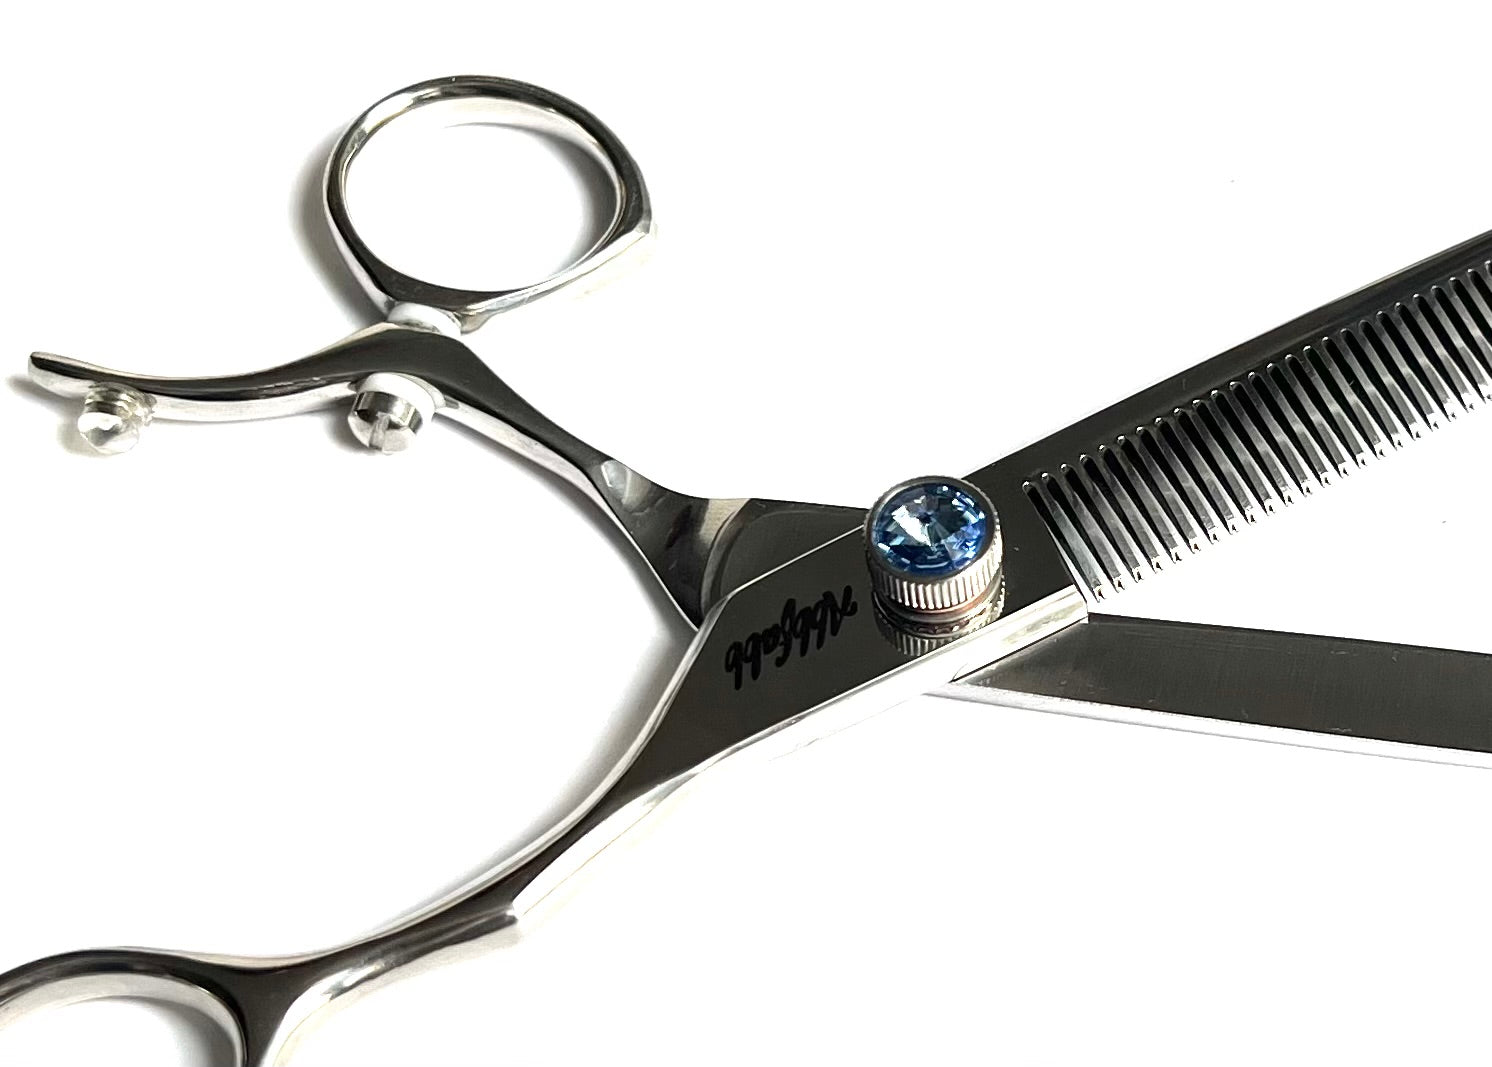 blending dog grooming scissor-blender-blending scissors for dog grooming-swivel handle